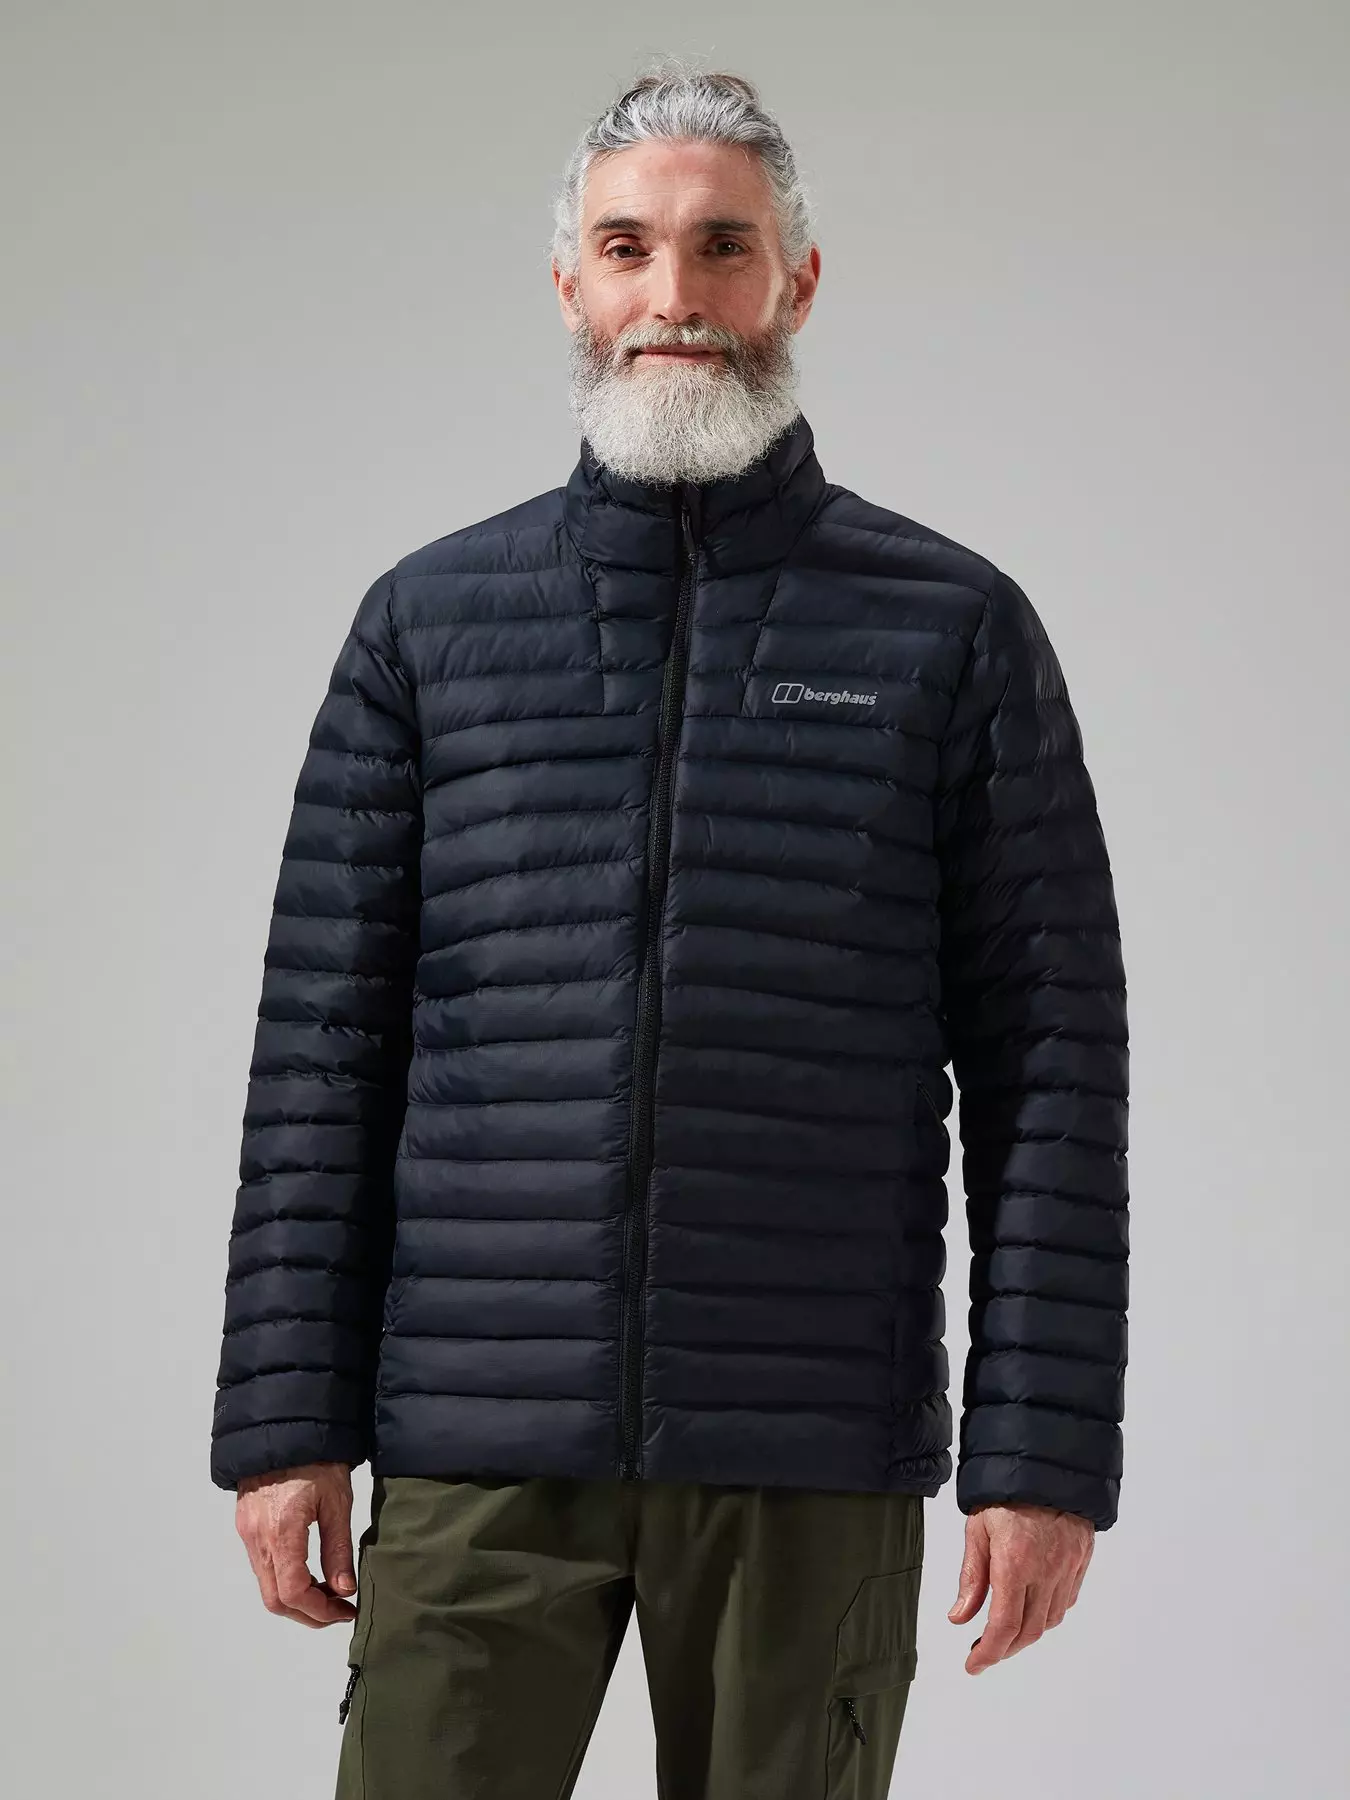 Berghaus, Coats & jackets, Men